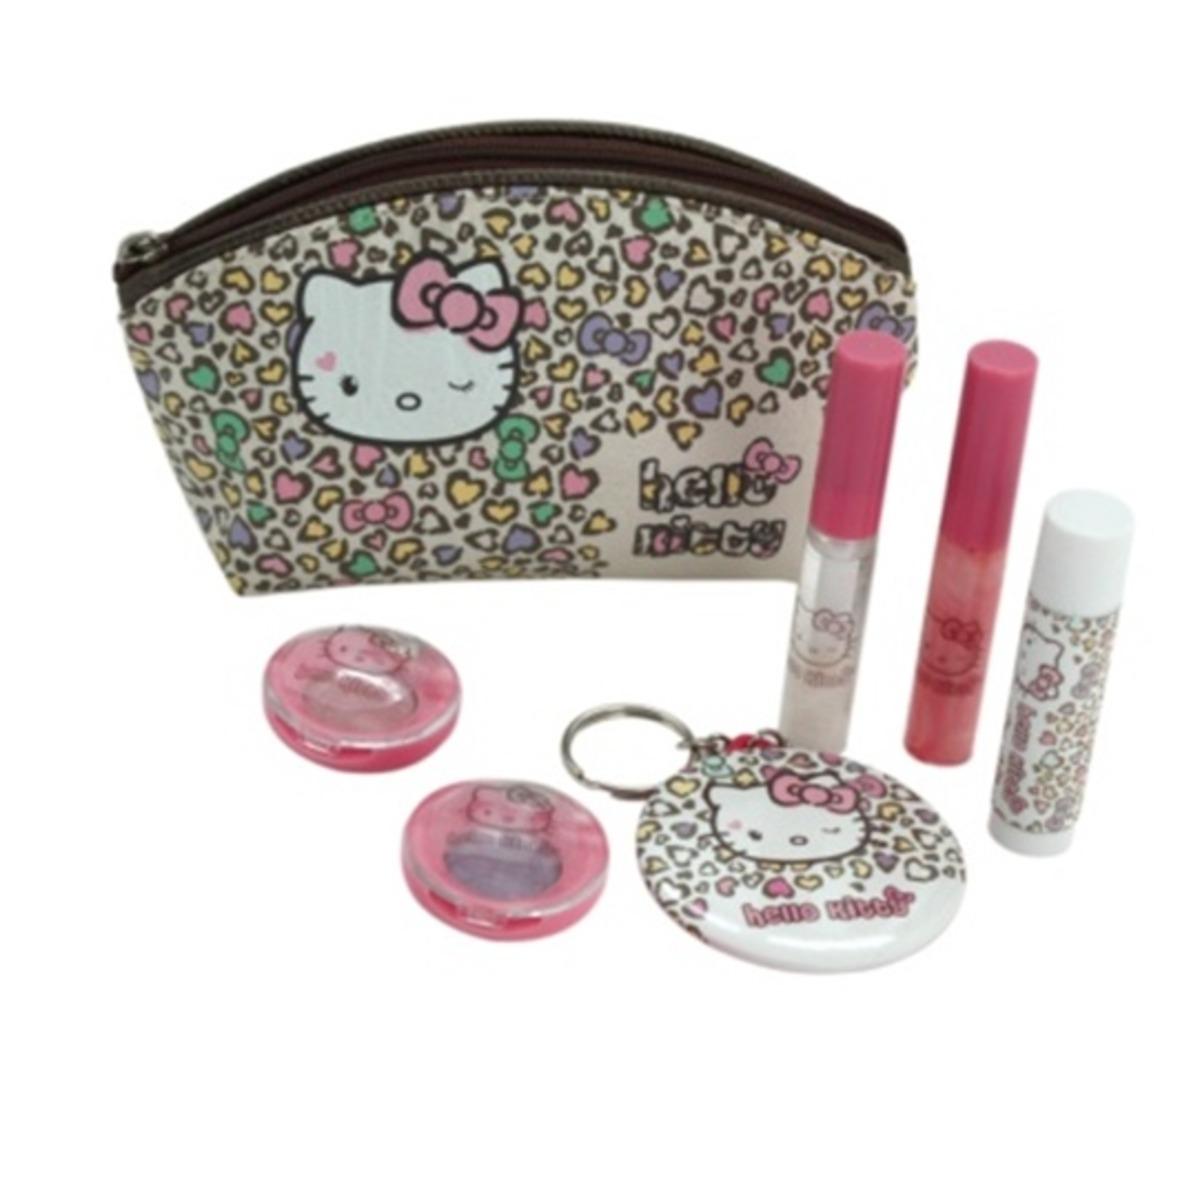 Coffret maquillage Hello Kitty - 18 x 21 x 4,5 cm - Multicolore